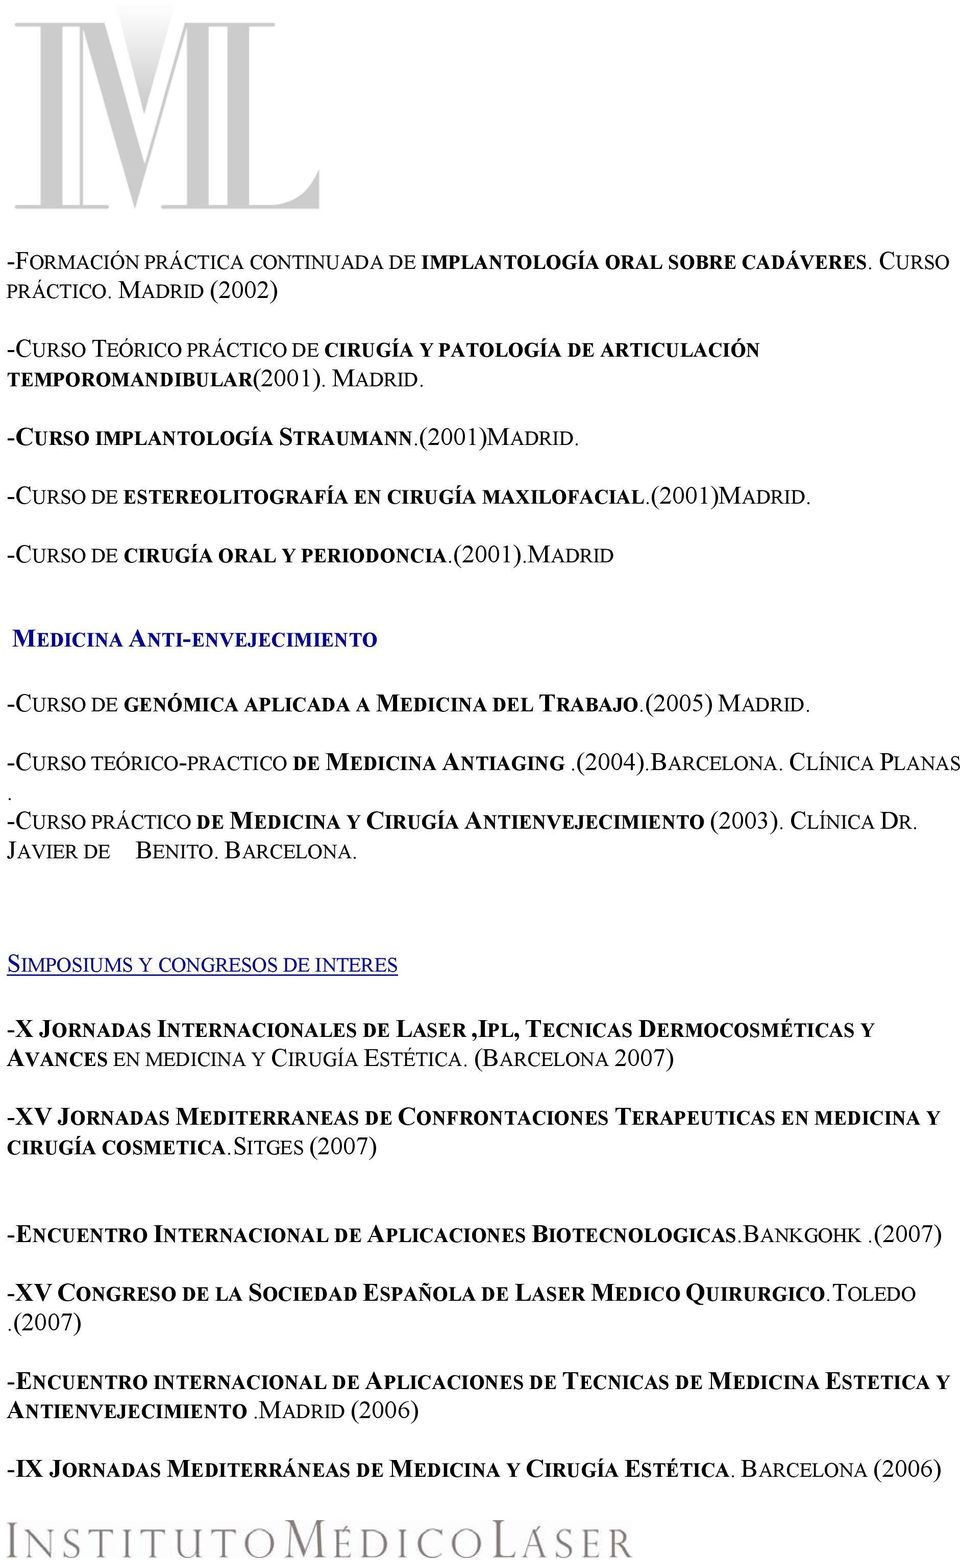 (2005) MADRID. -CURSO TEÓRICO-PRACTICO DE MEDICINA ANTIAGING.(2004).BARCELONA. CLÍNICA PLANAS. -CURSO PRÁCTICO DE MEDICINA Y CIRUGÍA ANTIENVEJECIMIENTO (2003). CLÍNICA DR. JAVIER DE BENITO. BARCELONA.